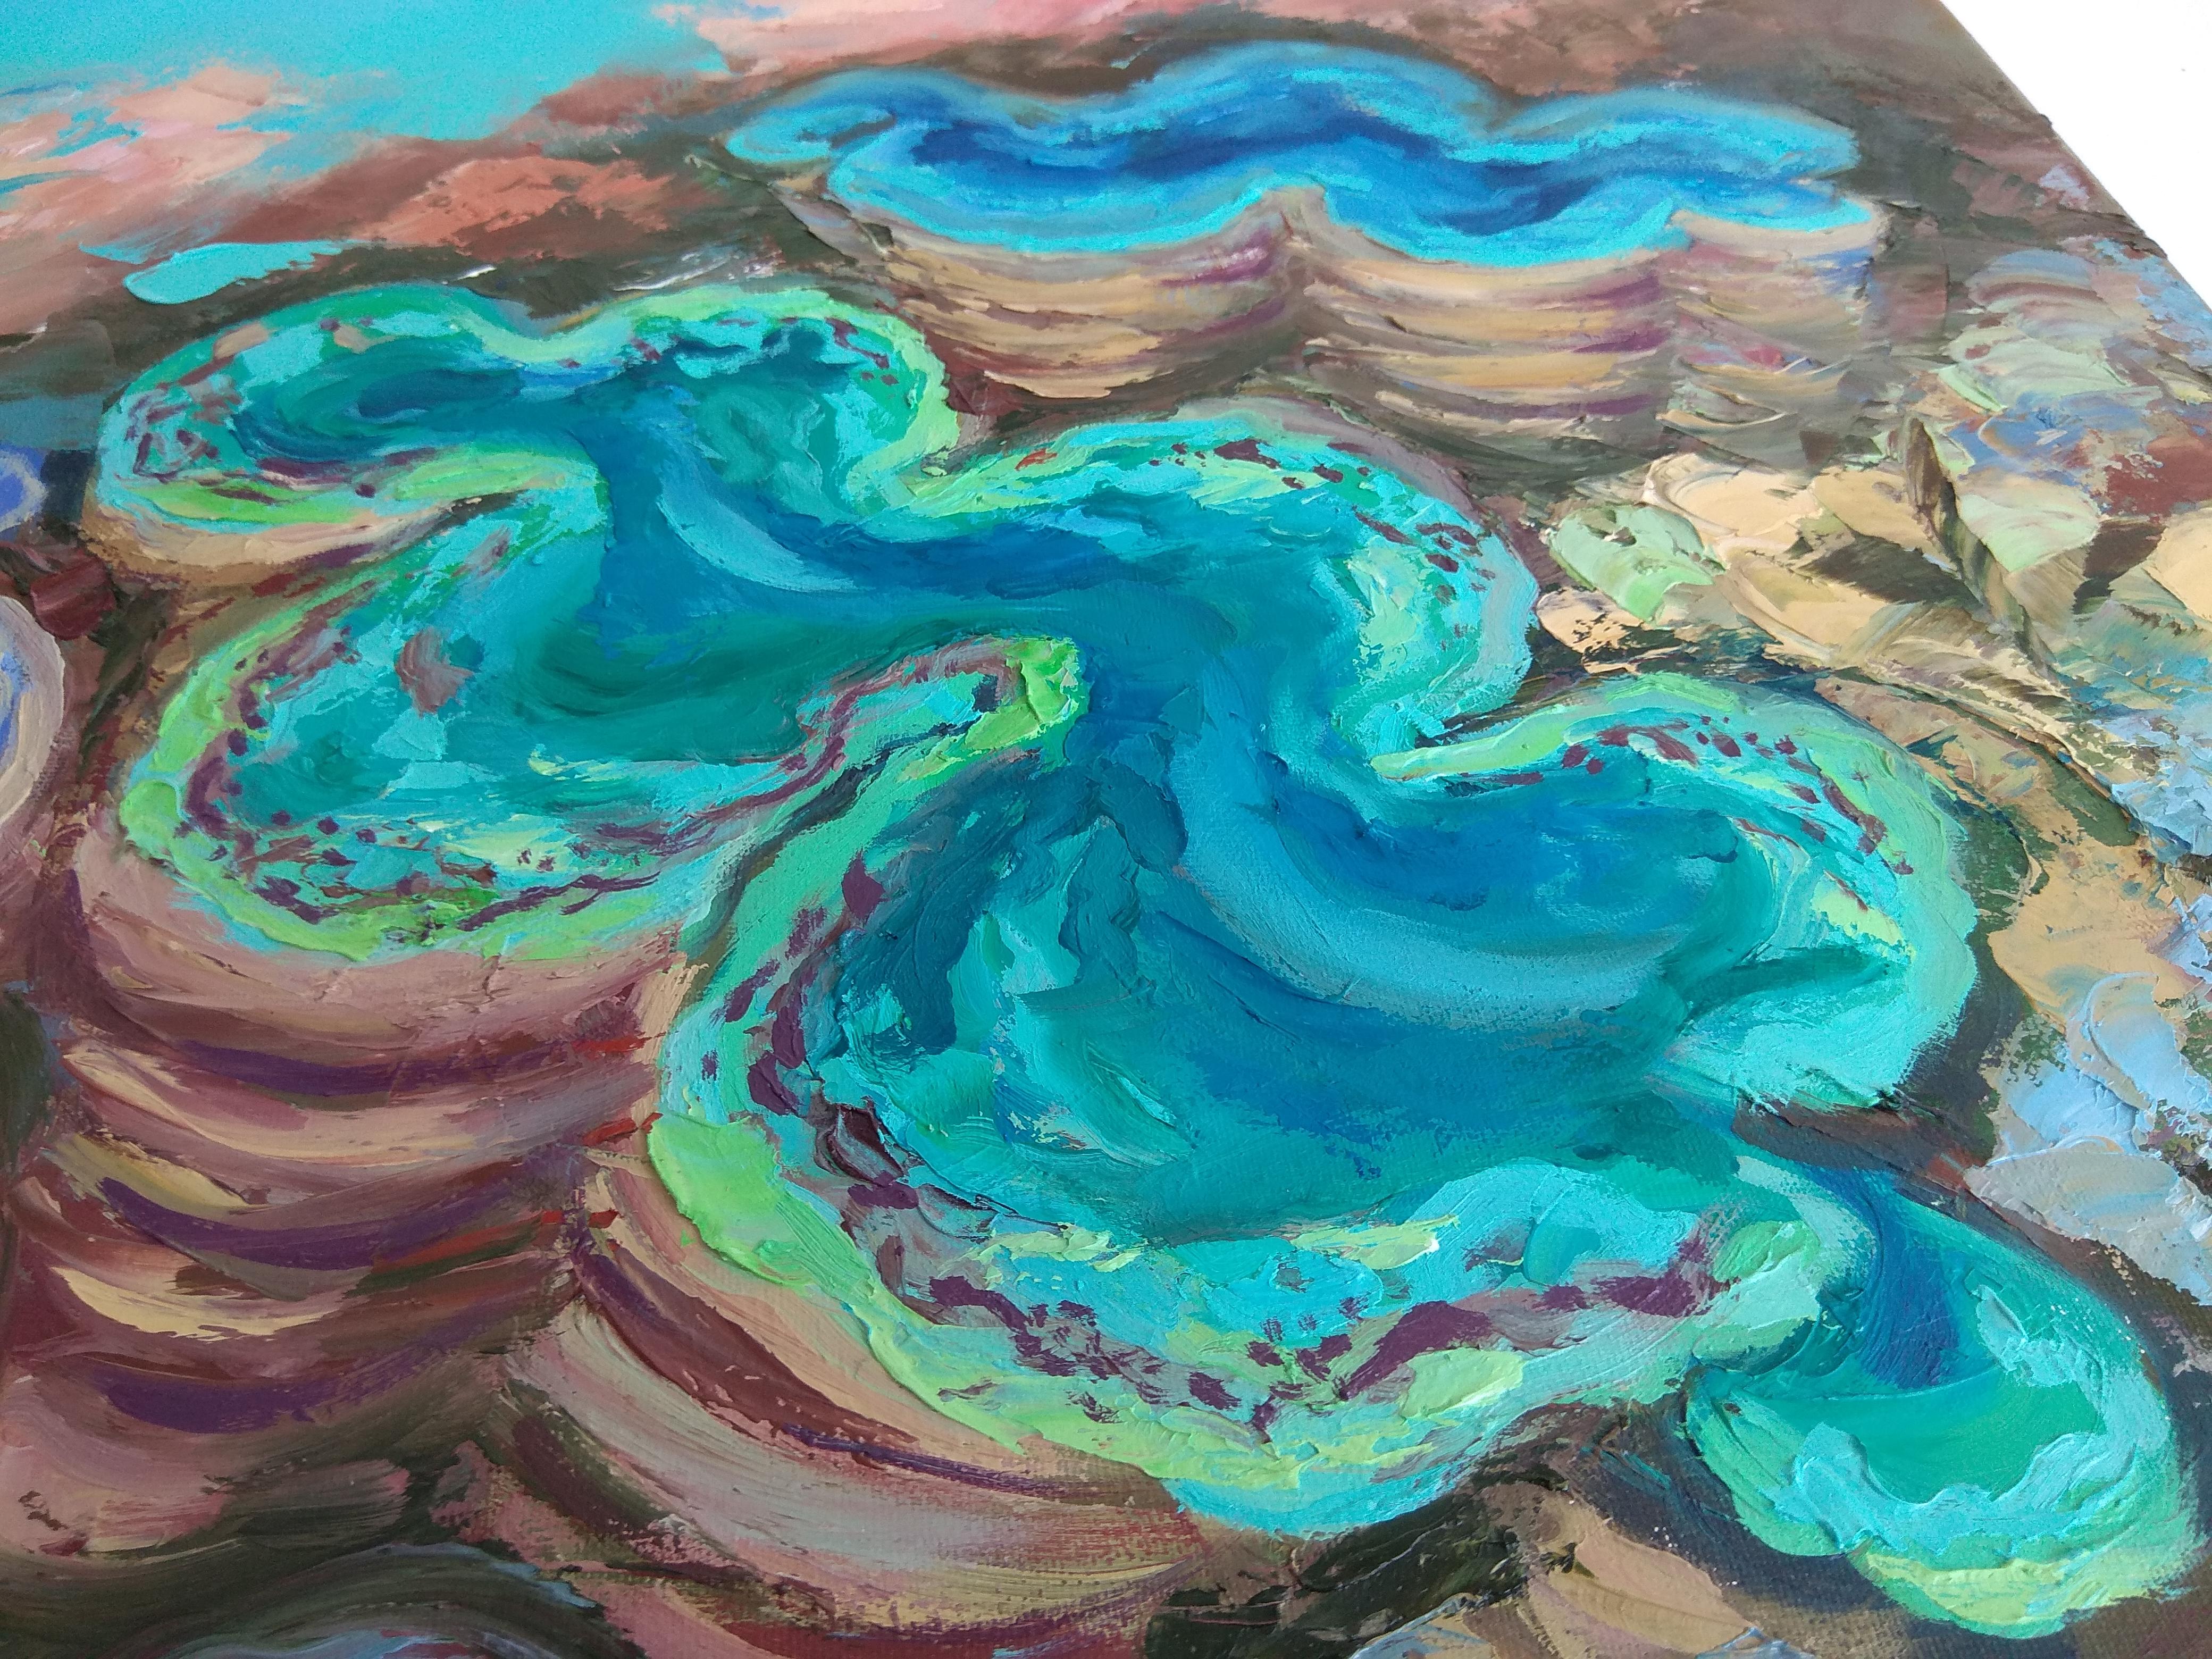 Original Korallenriff Unterwasserbild von Olga Nikitina.
* Titel: Korallenriff
* Größe: 70x50 cm 28x20